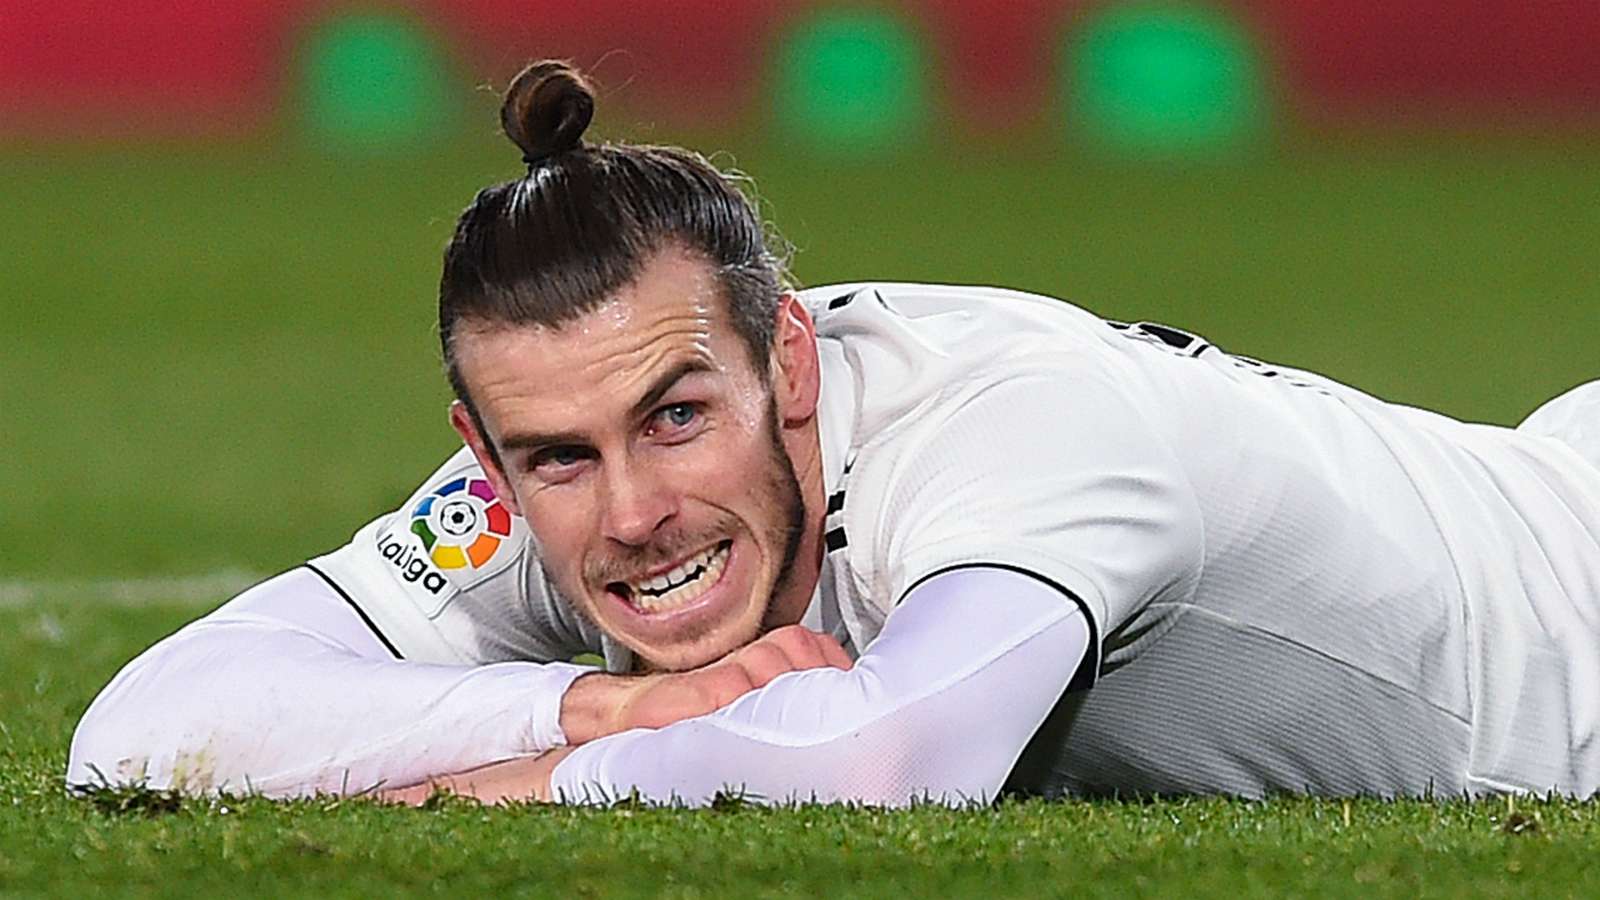 Këshilltarët e Bale janë në Londër, po negociohet për transferimin e tij te gjiganti i PL